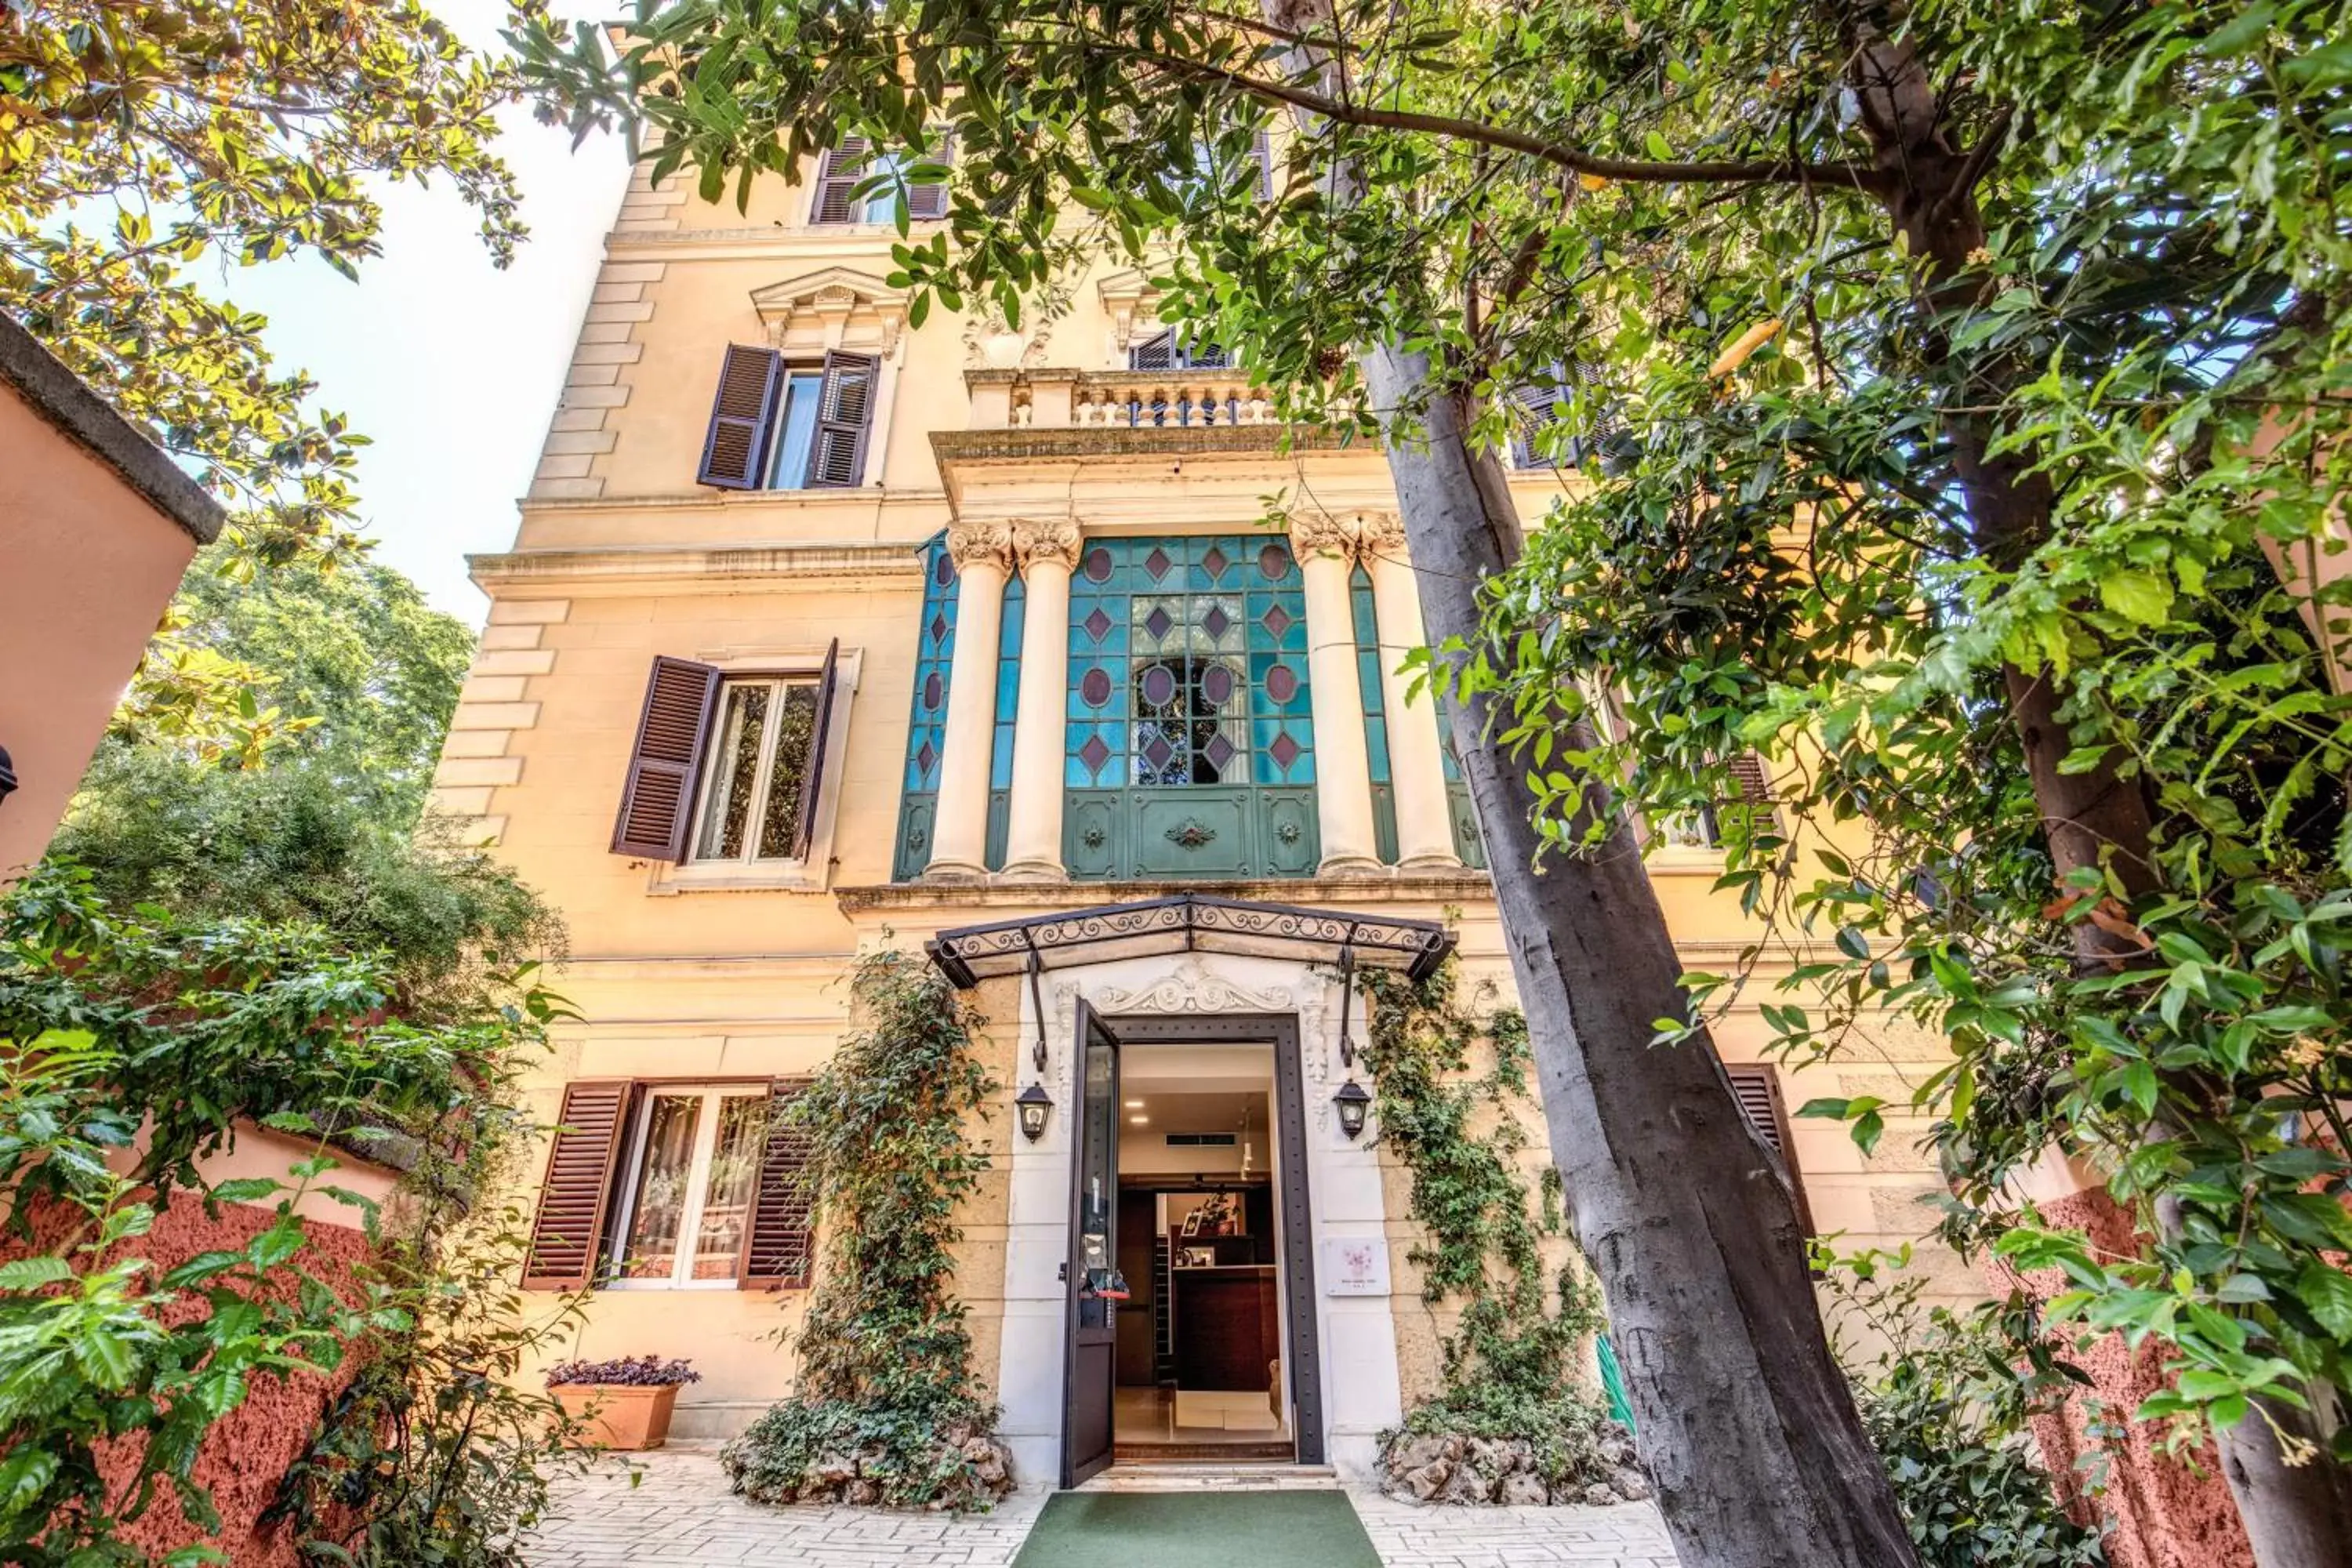 Facade/entrance, Property Building in Rome Garden Hotel